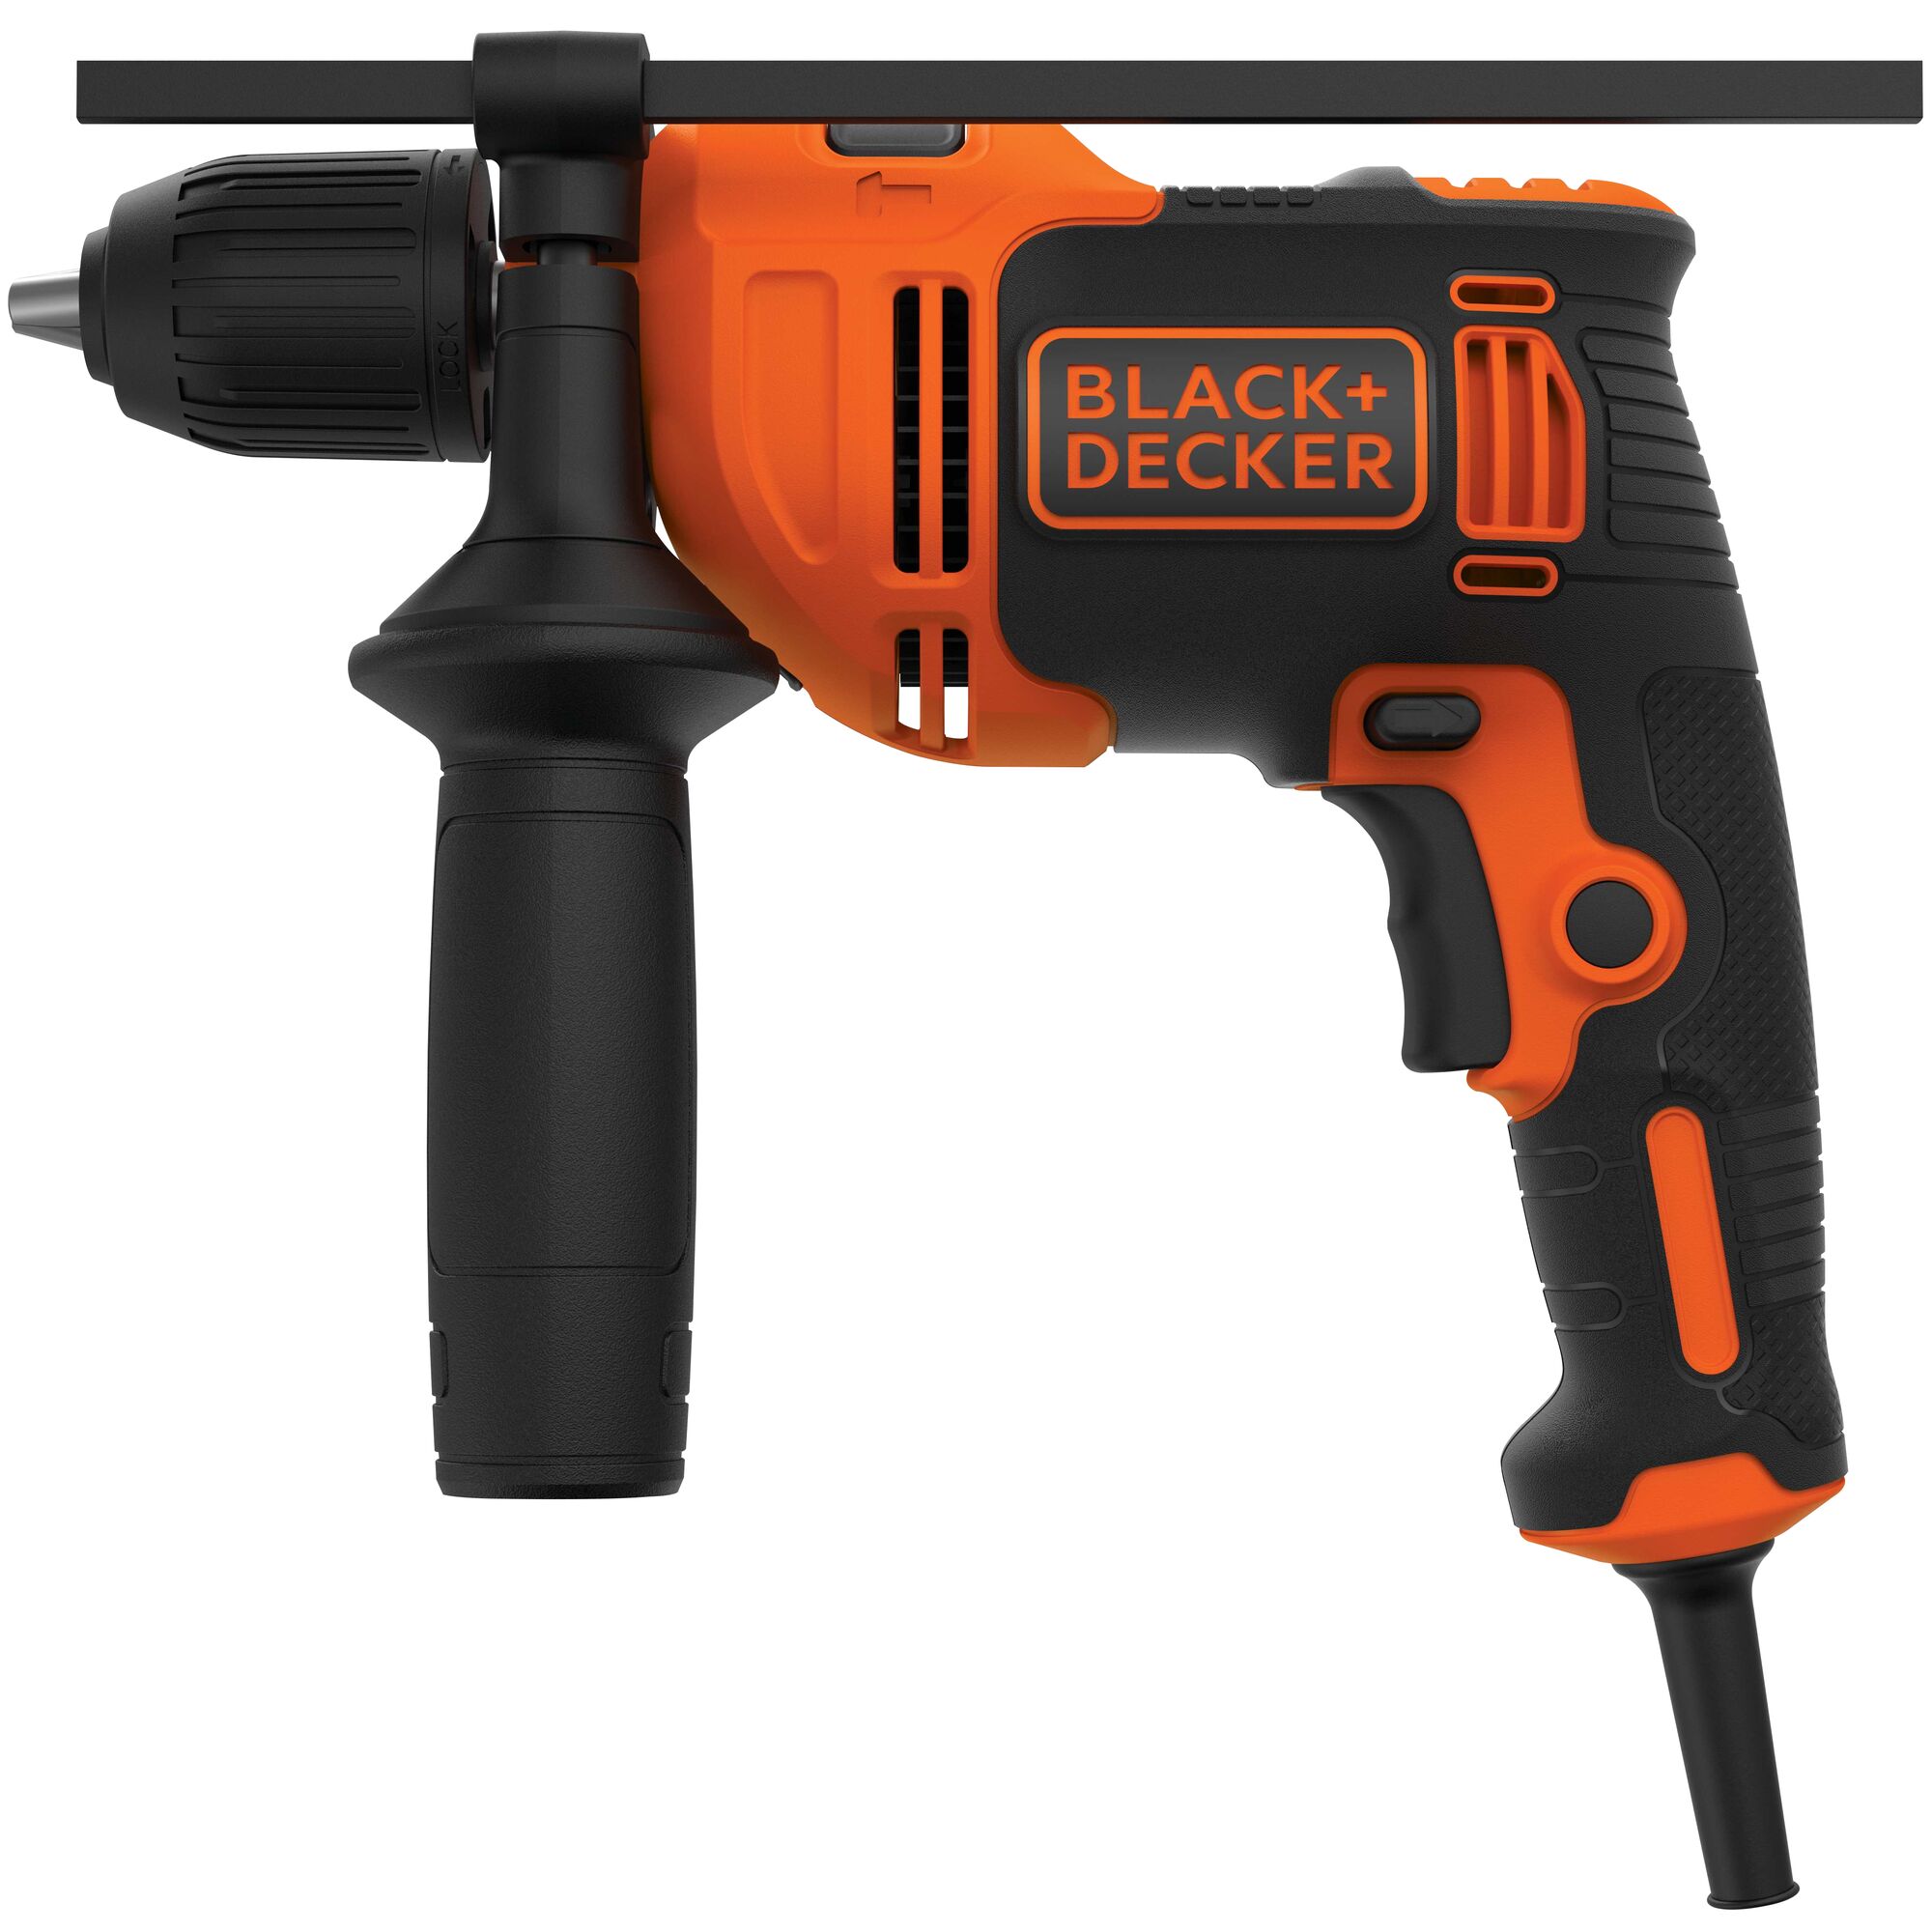 Black & Decker D520 Power Drill - Old Faithful, This belong…